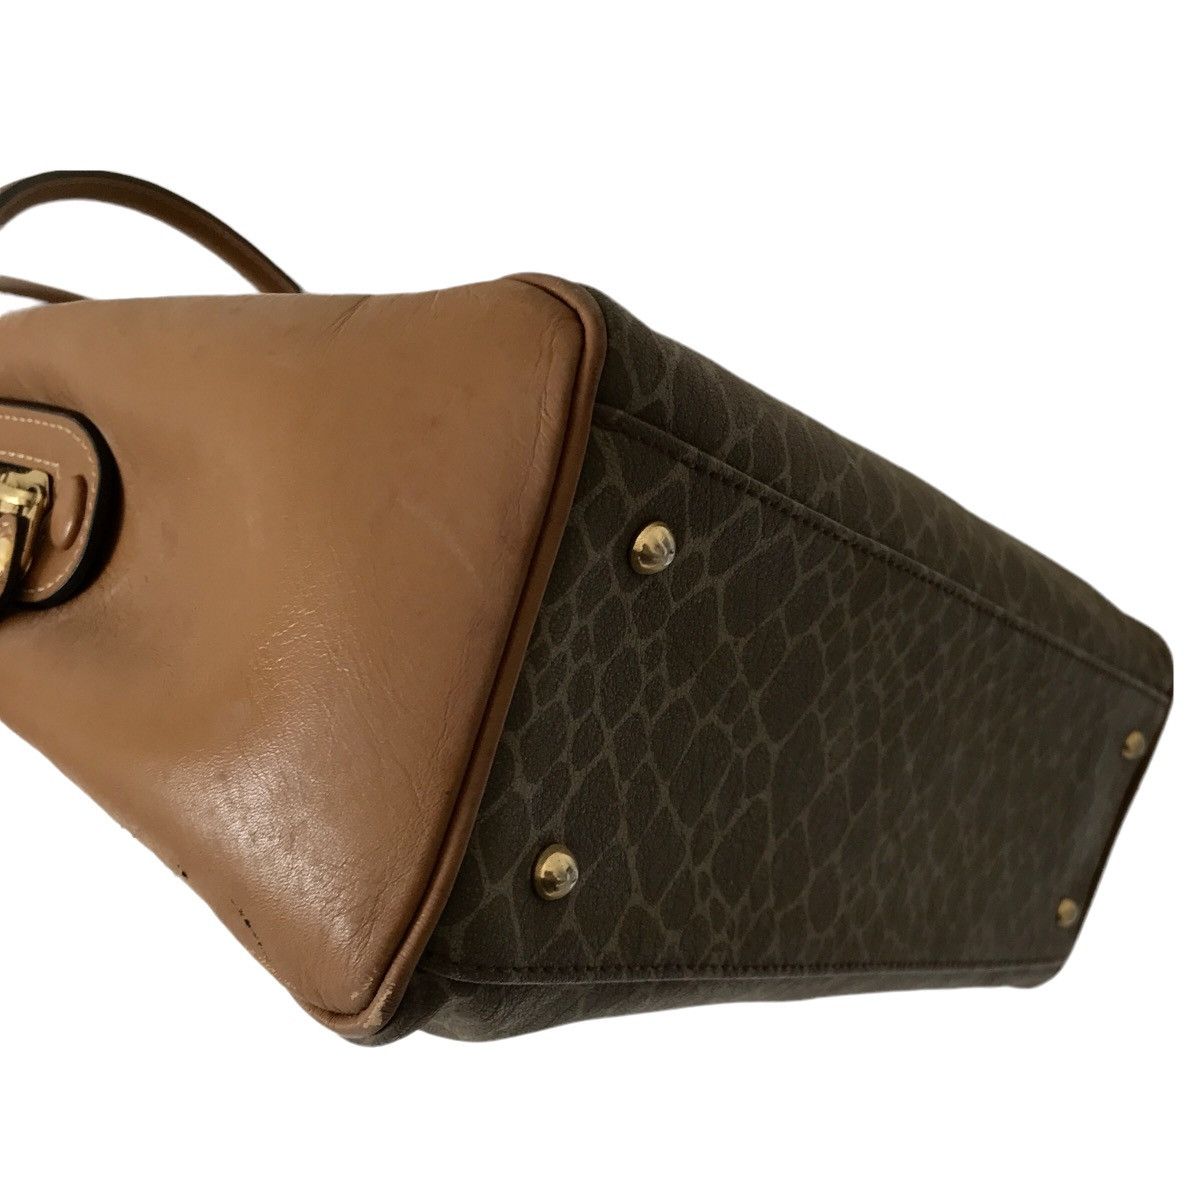 Vintage Authentic Vintage Nina Ricci Paris Leather Handheld Bag Size ONE SIZE - 8 Thumbnail